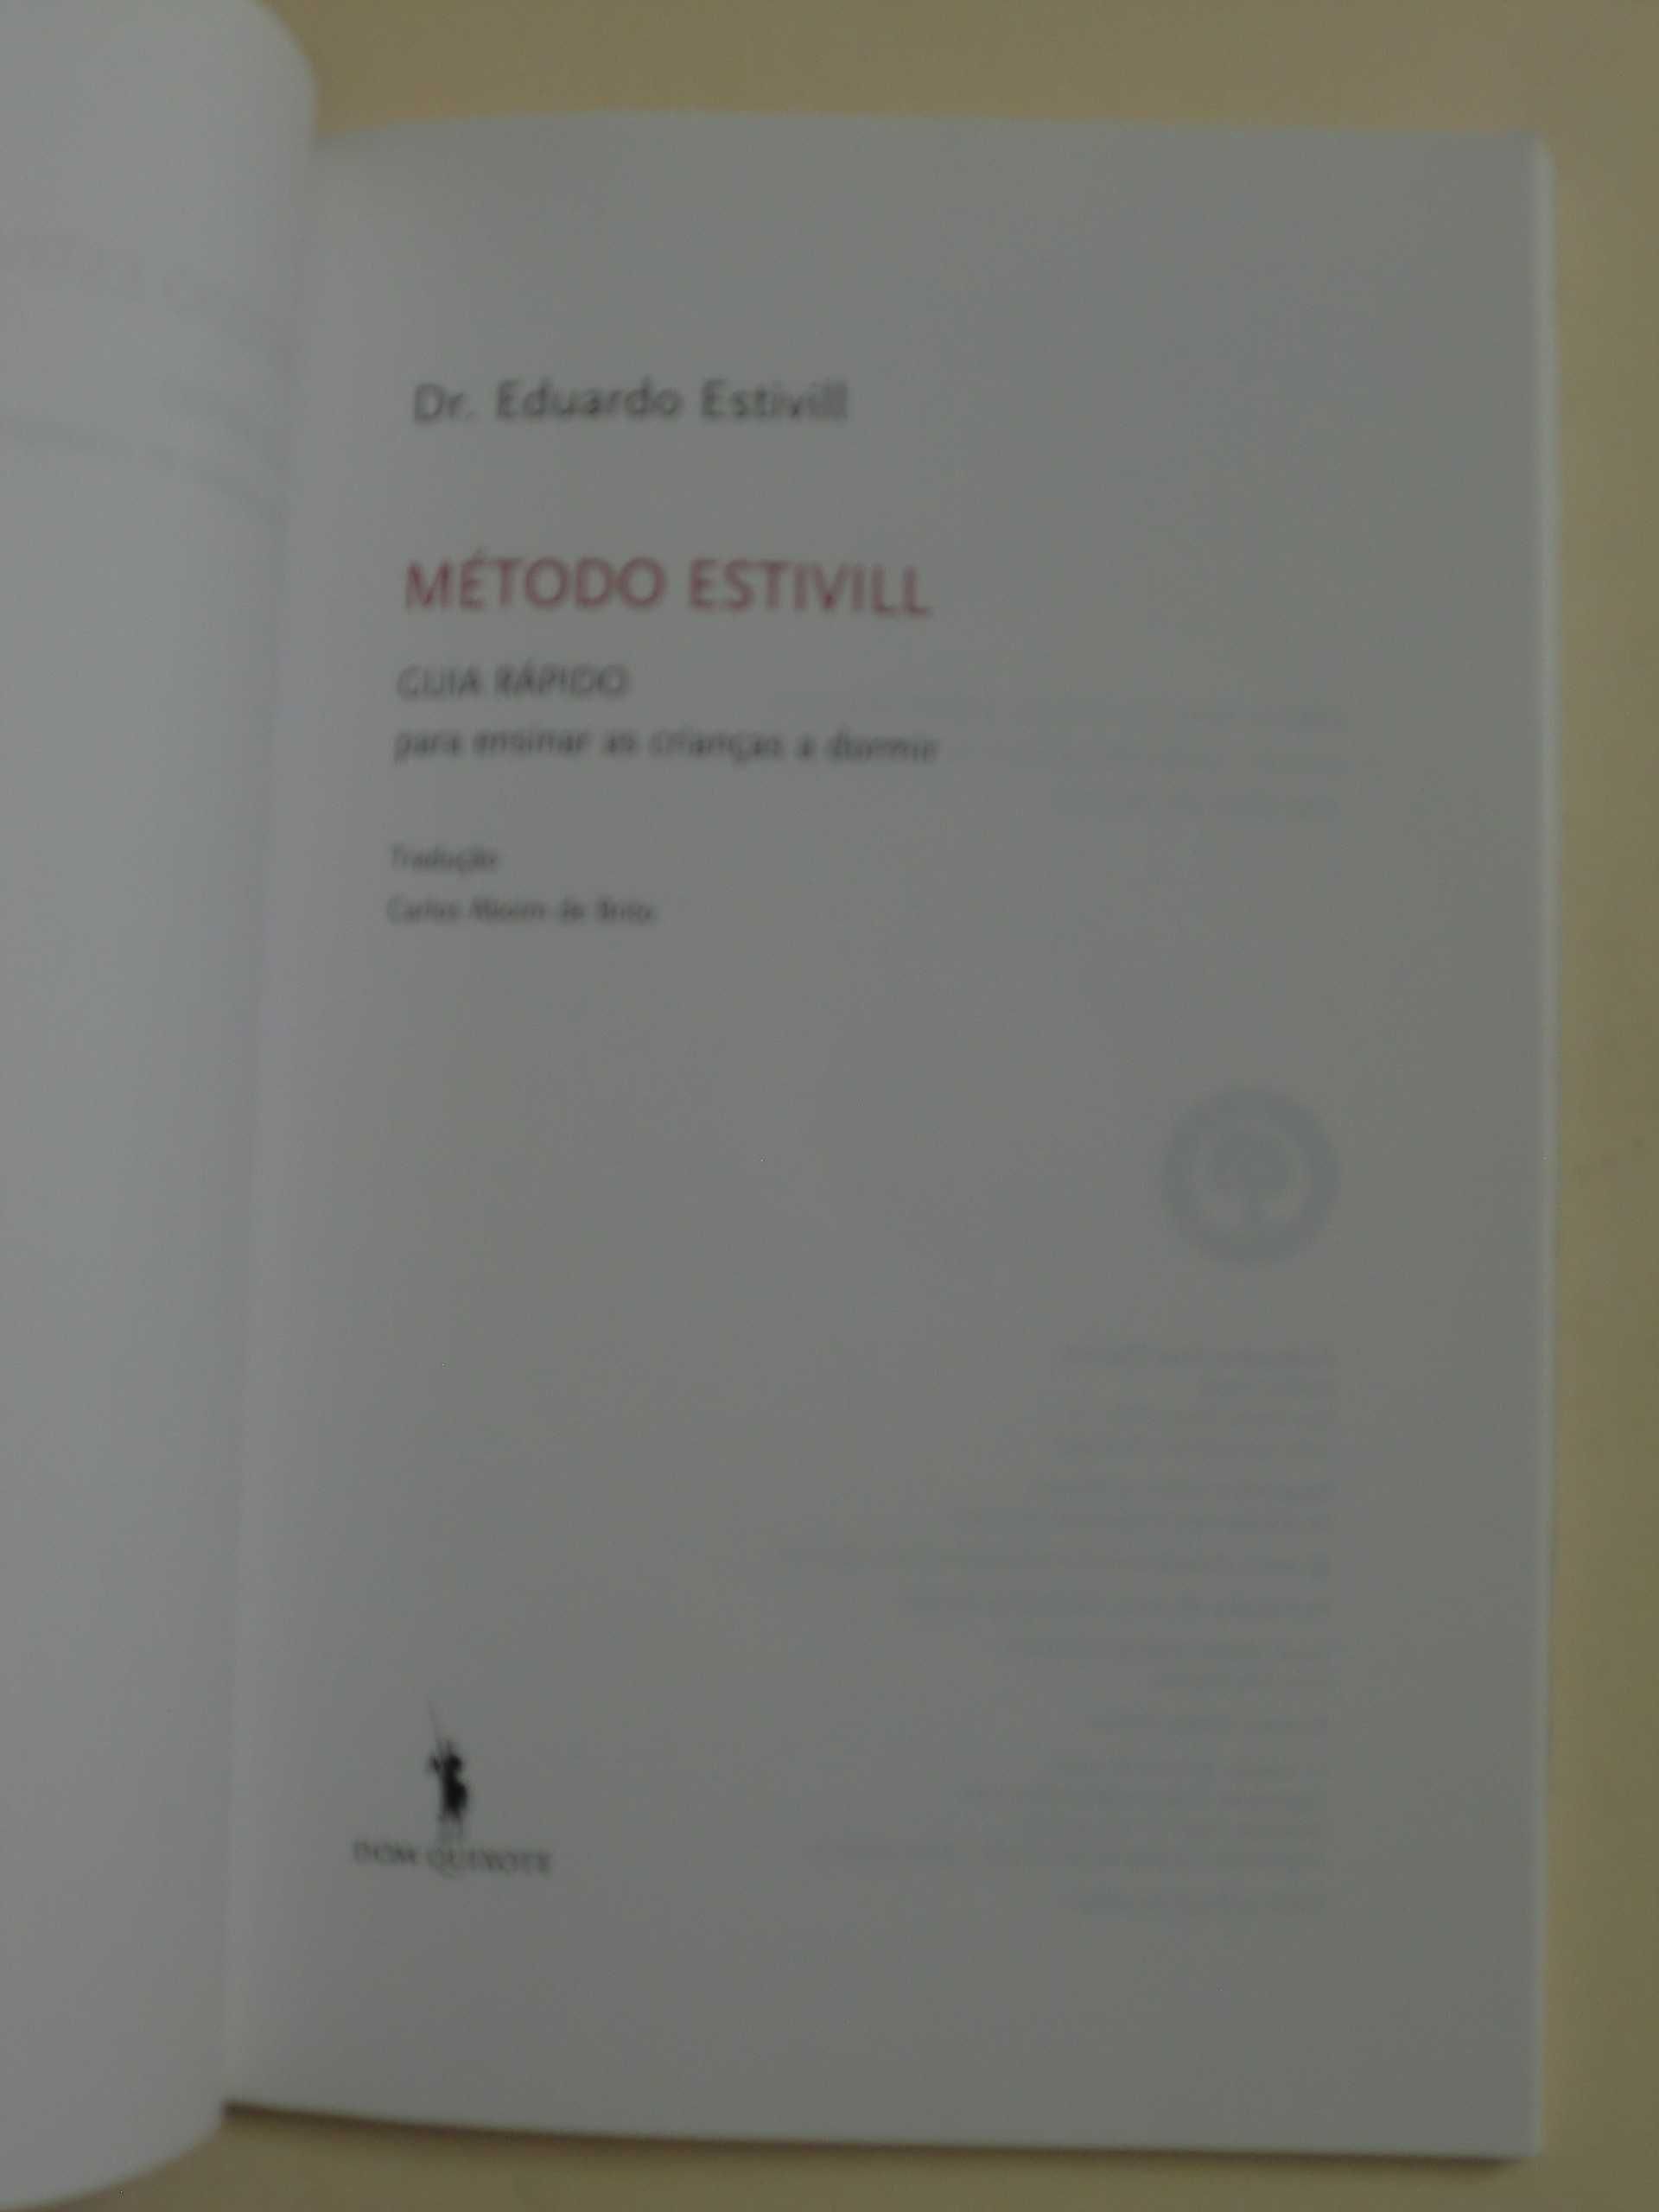 O Método Estivill de Eduard Estivill